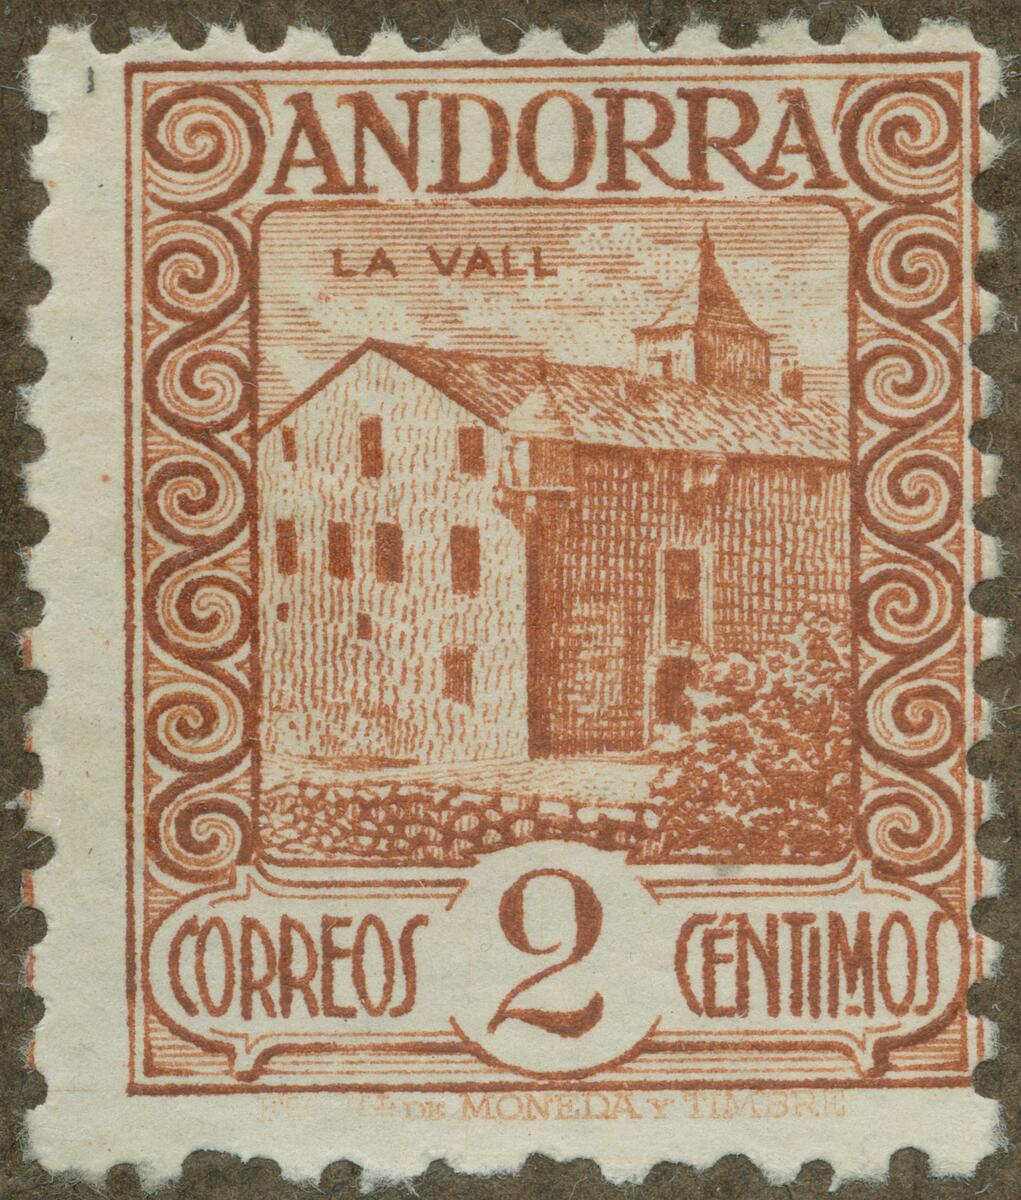 Frimärke ur Gösta Bodmans filatelistiska motivsamling, påbörjad 1950.
Frimärke från Andorra, 1929. Motiv av Huset "La Vall"